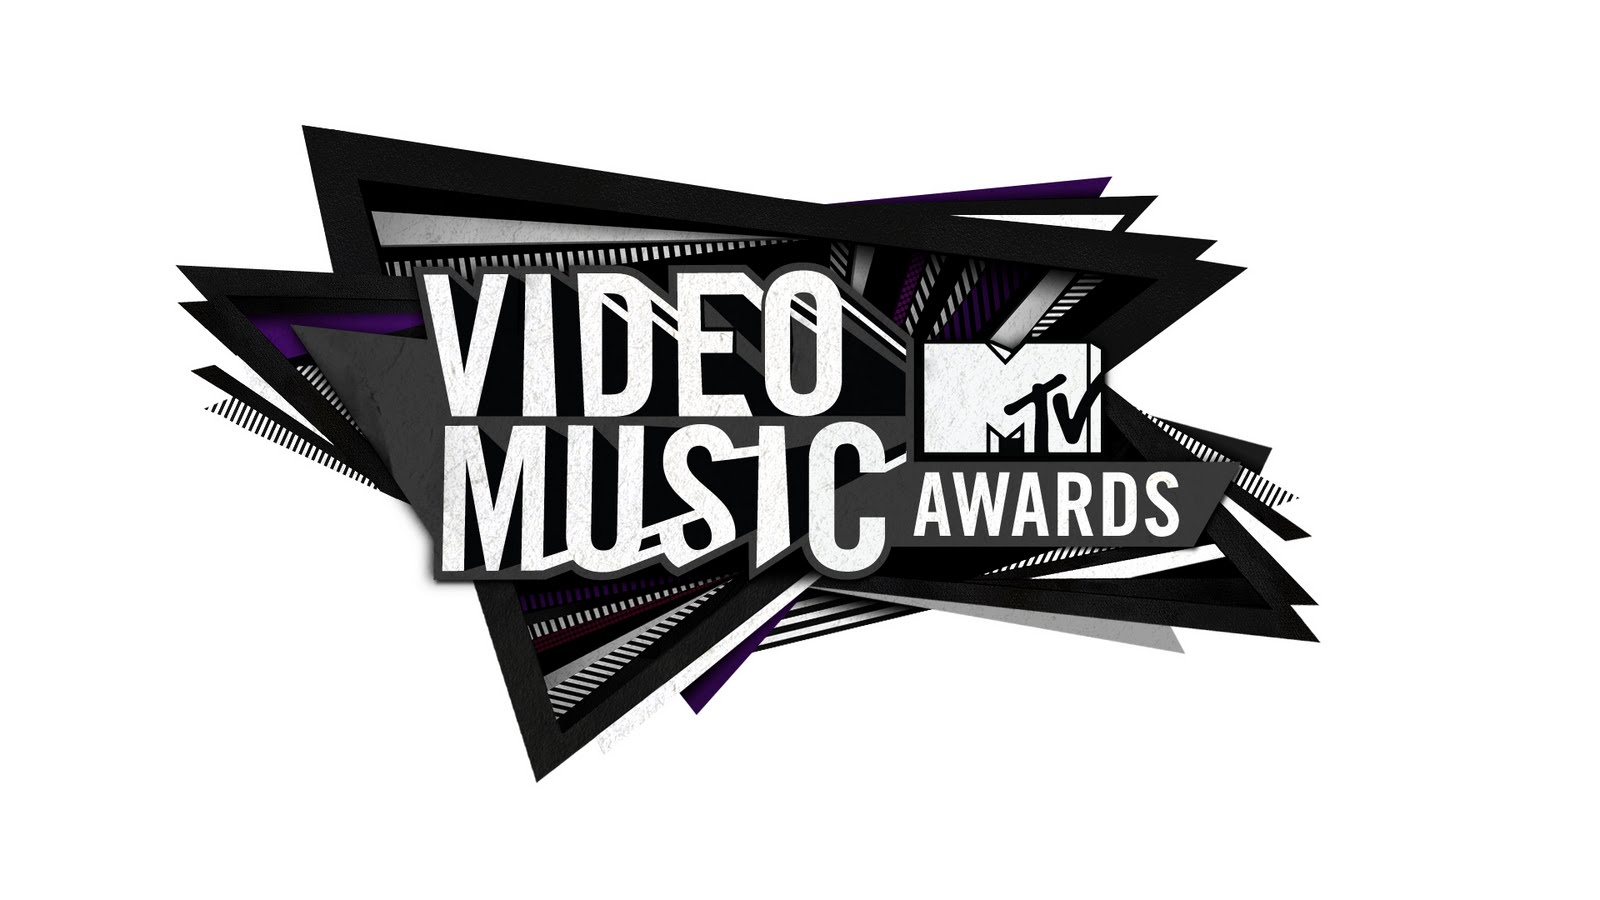 http://1.bp.blogspot.com/-GXYRkBhsebg/Tlu6K0Xb2jI/AAAAAAAAAYc/Xpk9xkhjOoA/s1600/MTV-VMA-2011_Logo.jpg